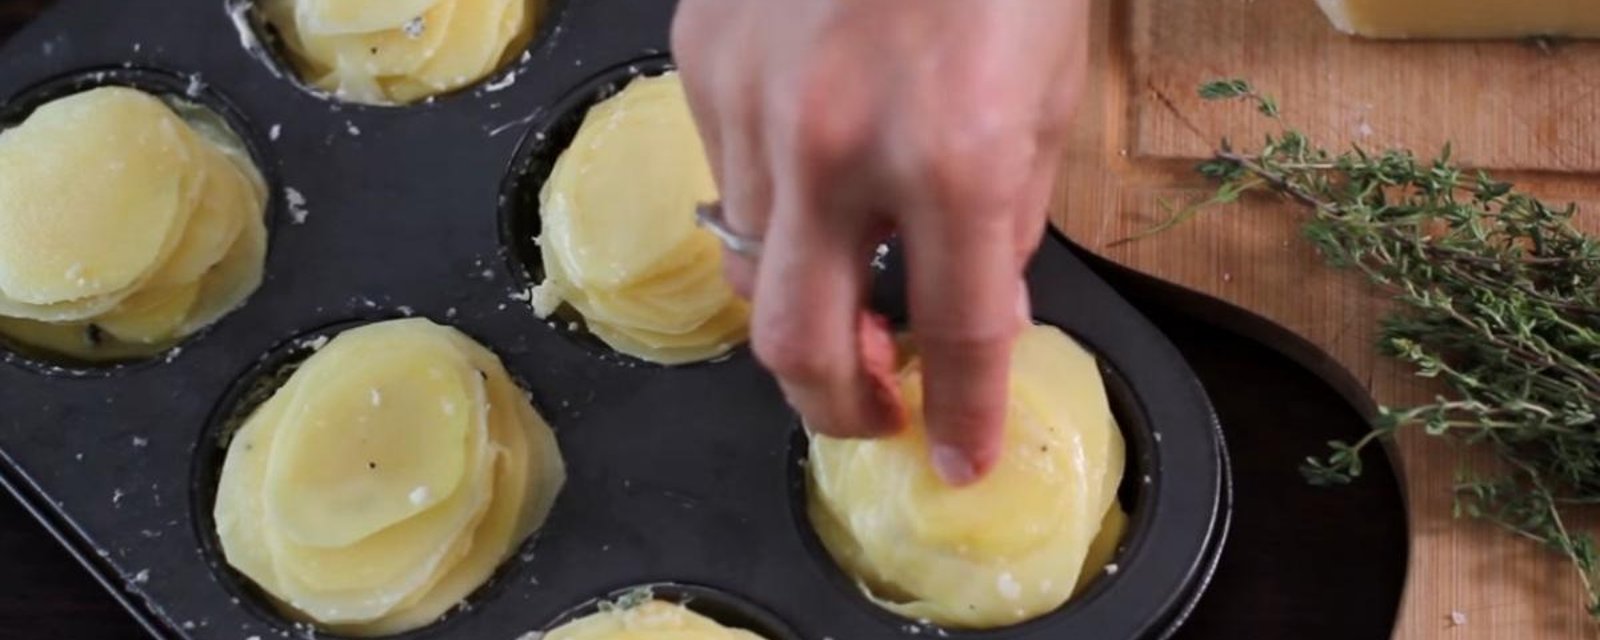 Pommes de terre au parmesan préparées dans un moule à muffins pour se faciliter la vie